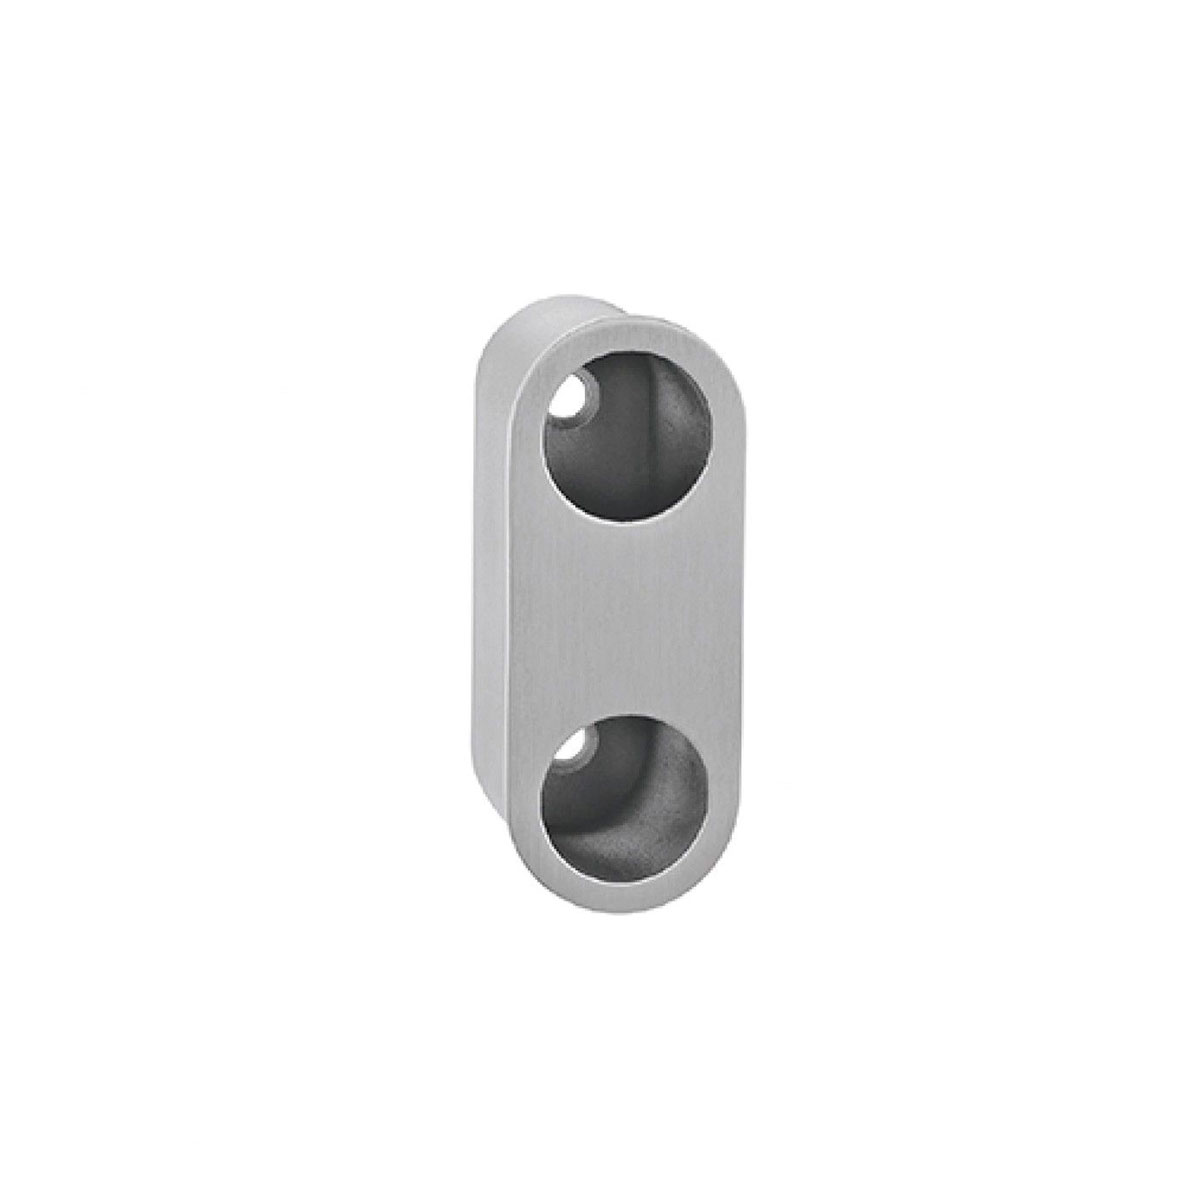 Dedal ovalado tipo uñero para puerta corredera fijación tornillo